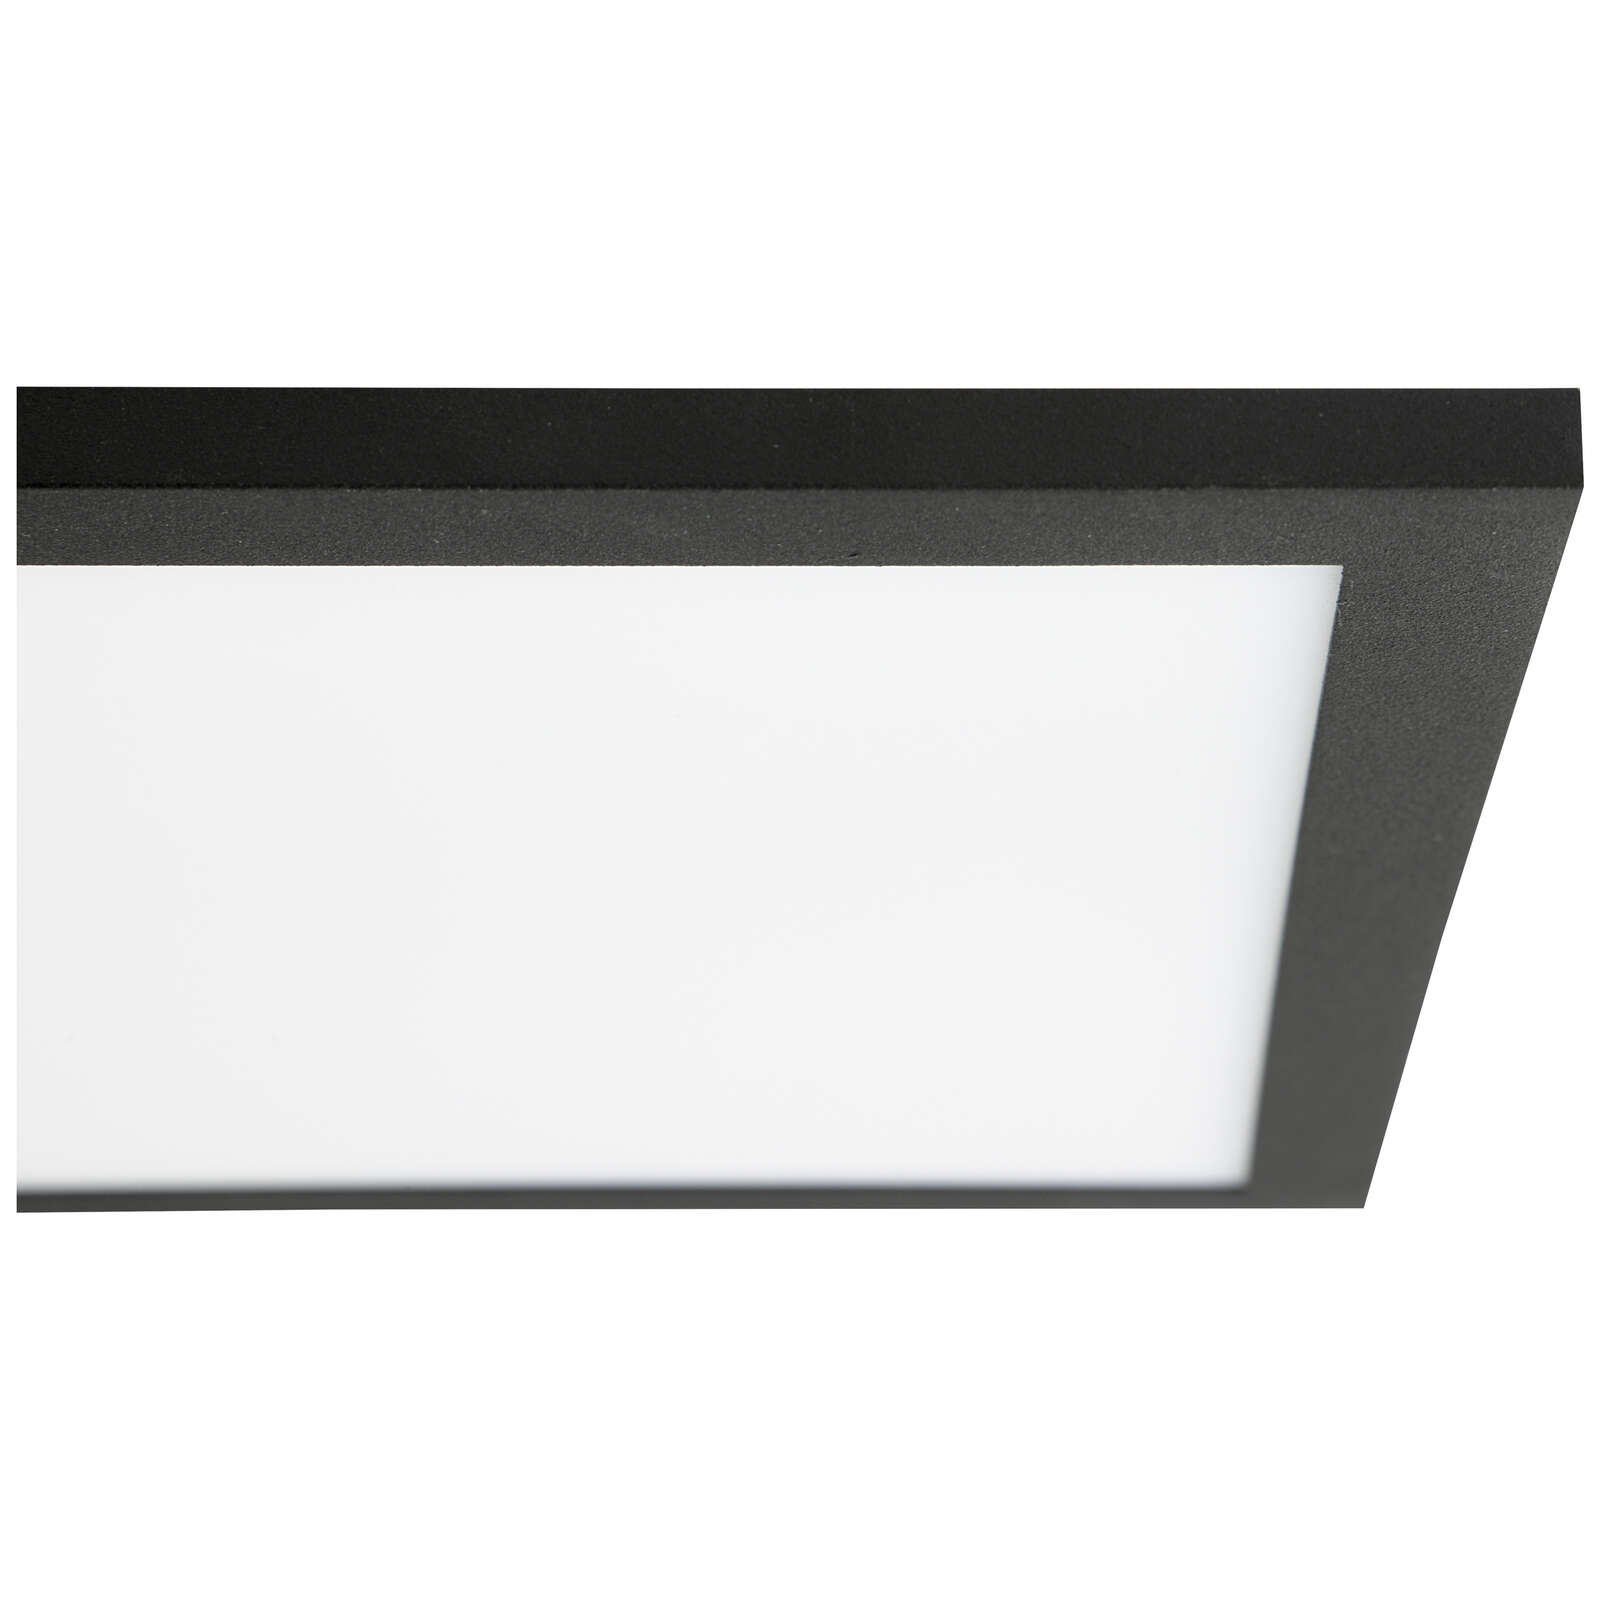             Plastic ceiling light - Constantin 12 - Black
        